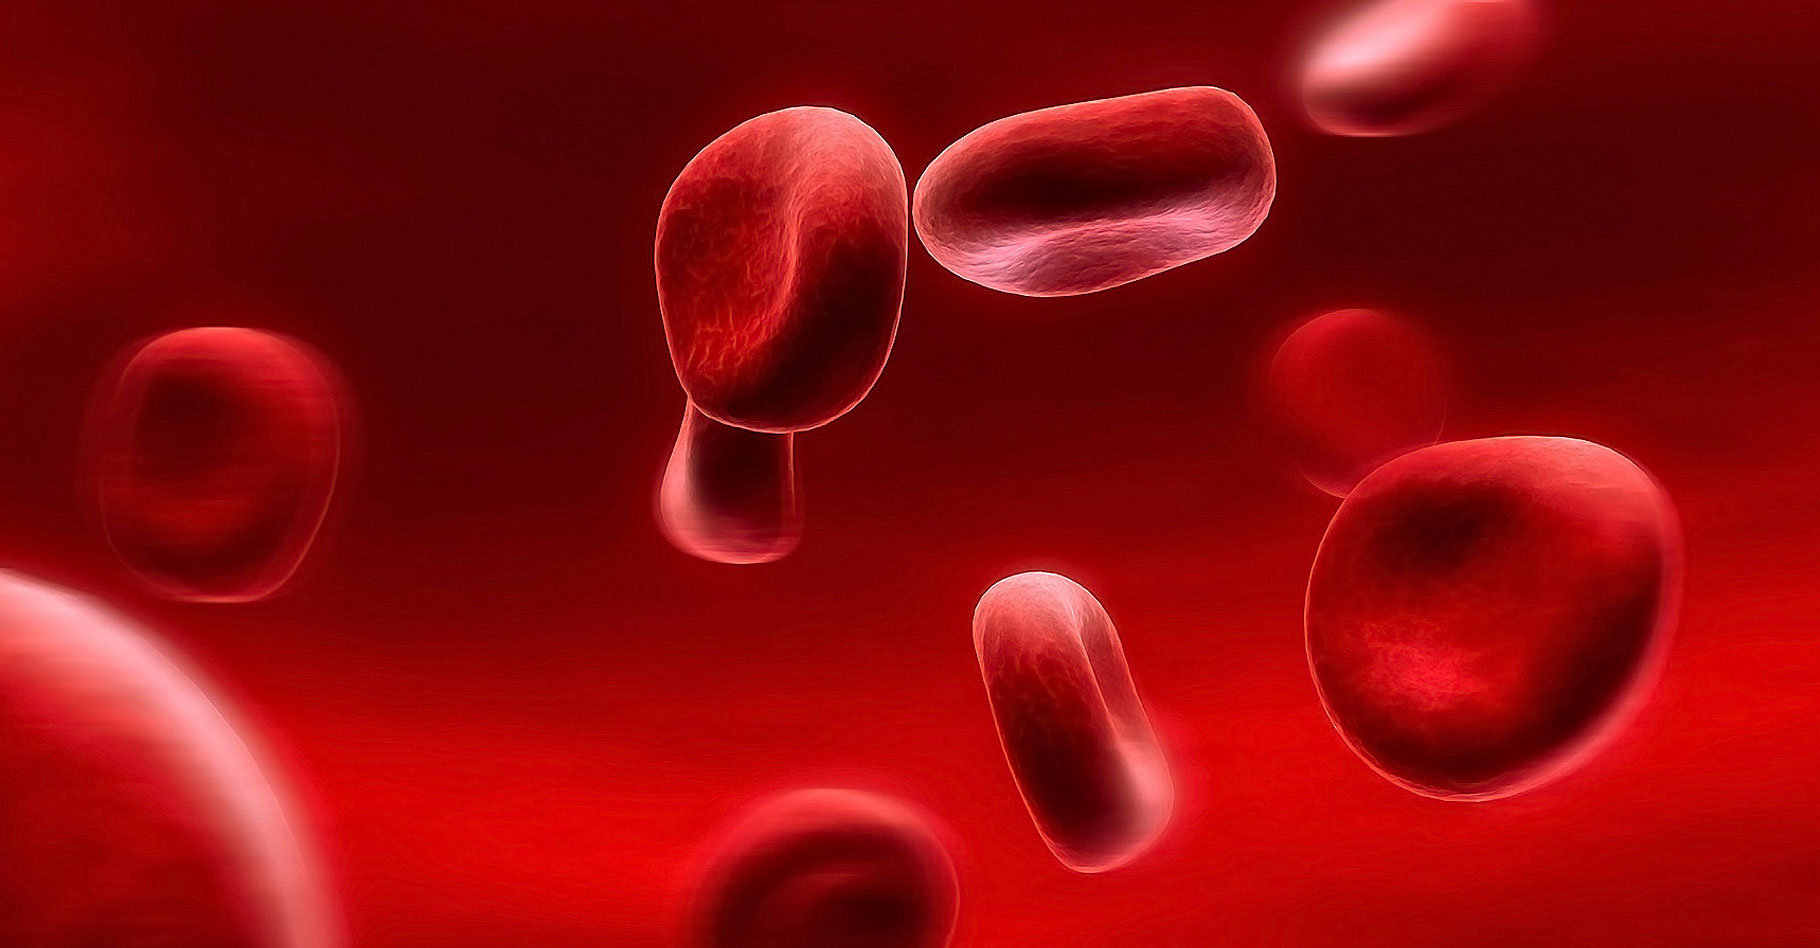 Le sang circule dans les artères. © Zhouxuan - CC BY-SA 2.0